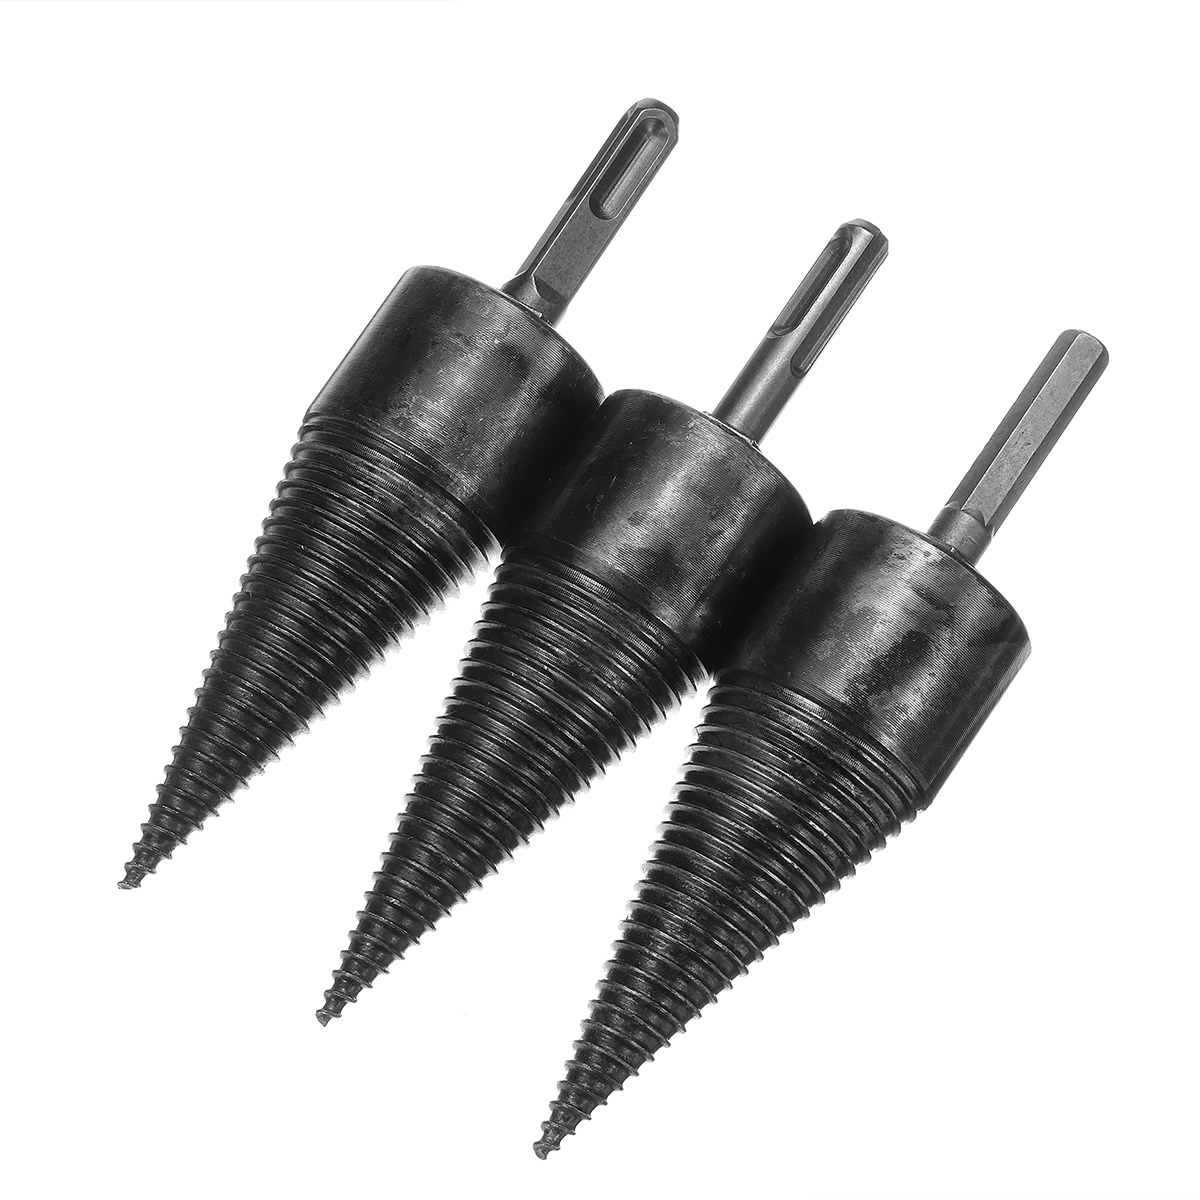 42mm-High-Speed-Steel-Firewood-Splitting-Drill-Bit-Hard-Wood-Cone-Splitter-Bit-1620176-3